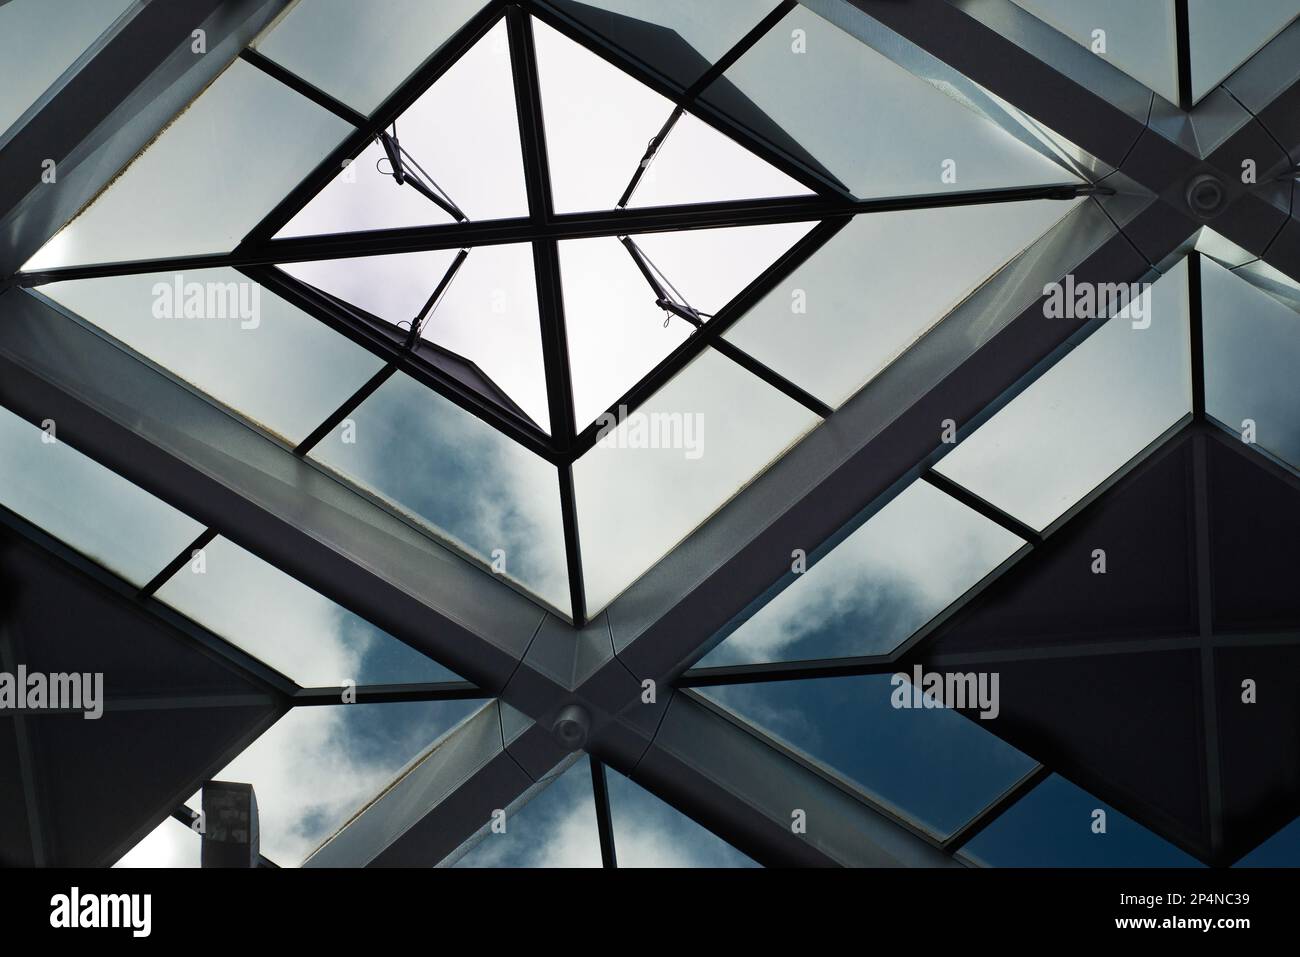 Den Haag: 10 de octubre de 2017, Países Bajos - Detalles del techo de la estación central de Den Haag como ejemplo de arquitectura moderna Foto de stock